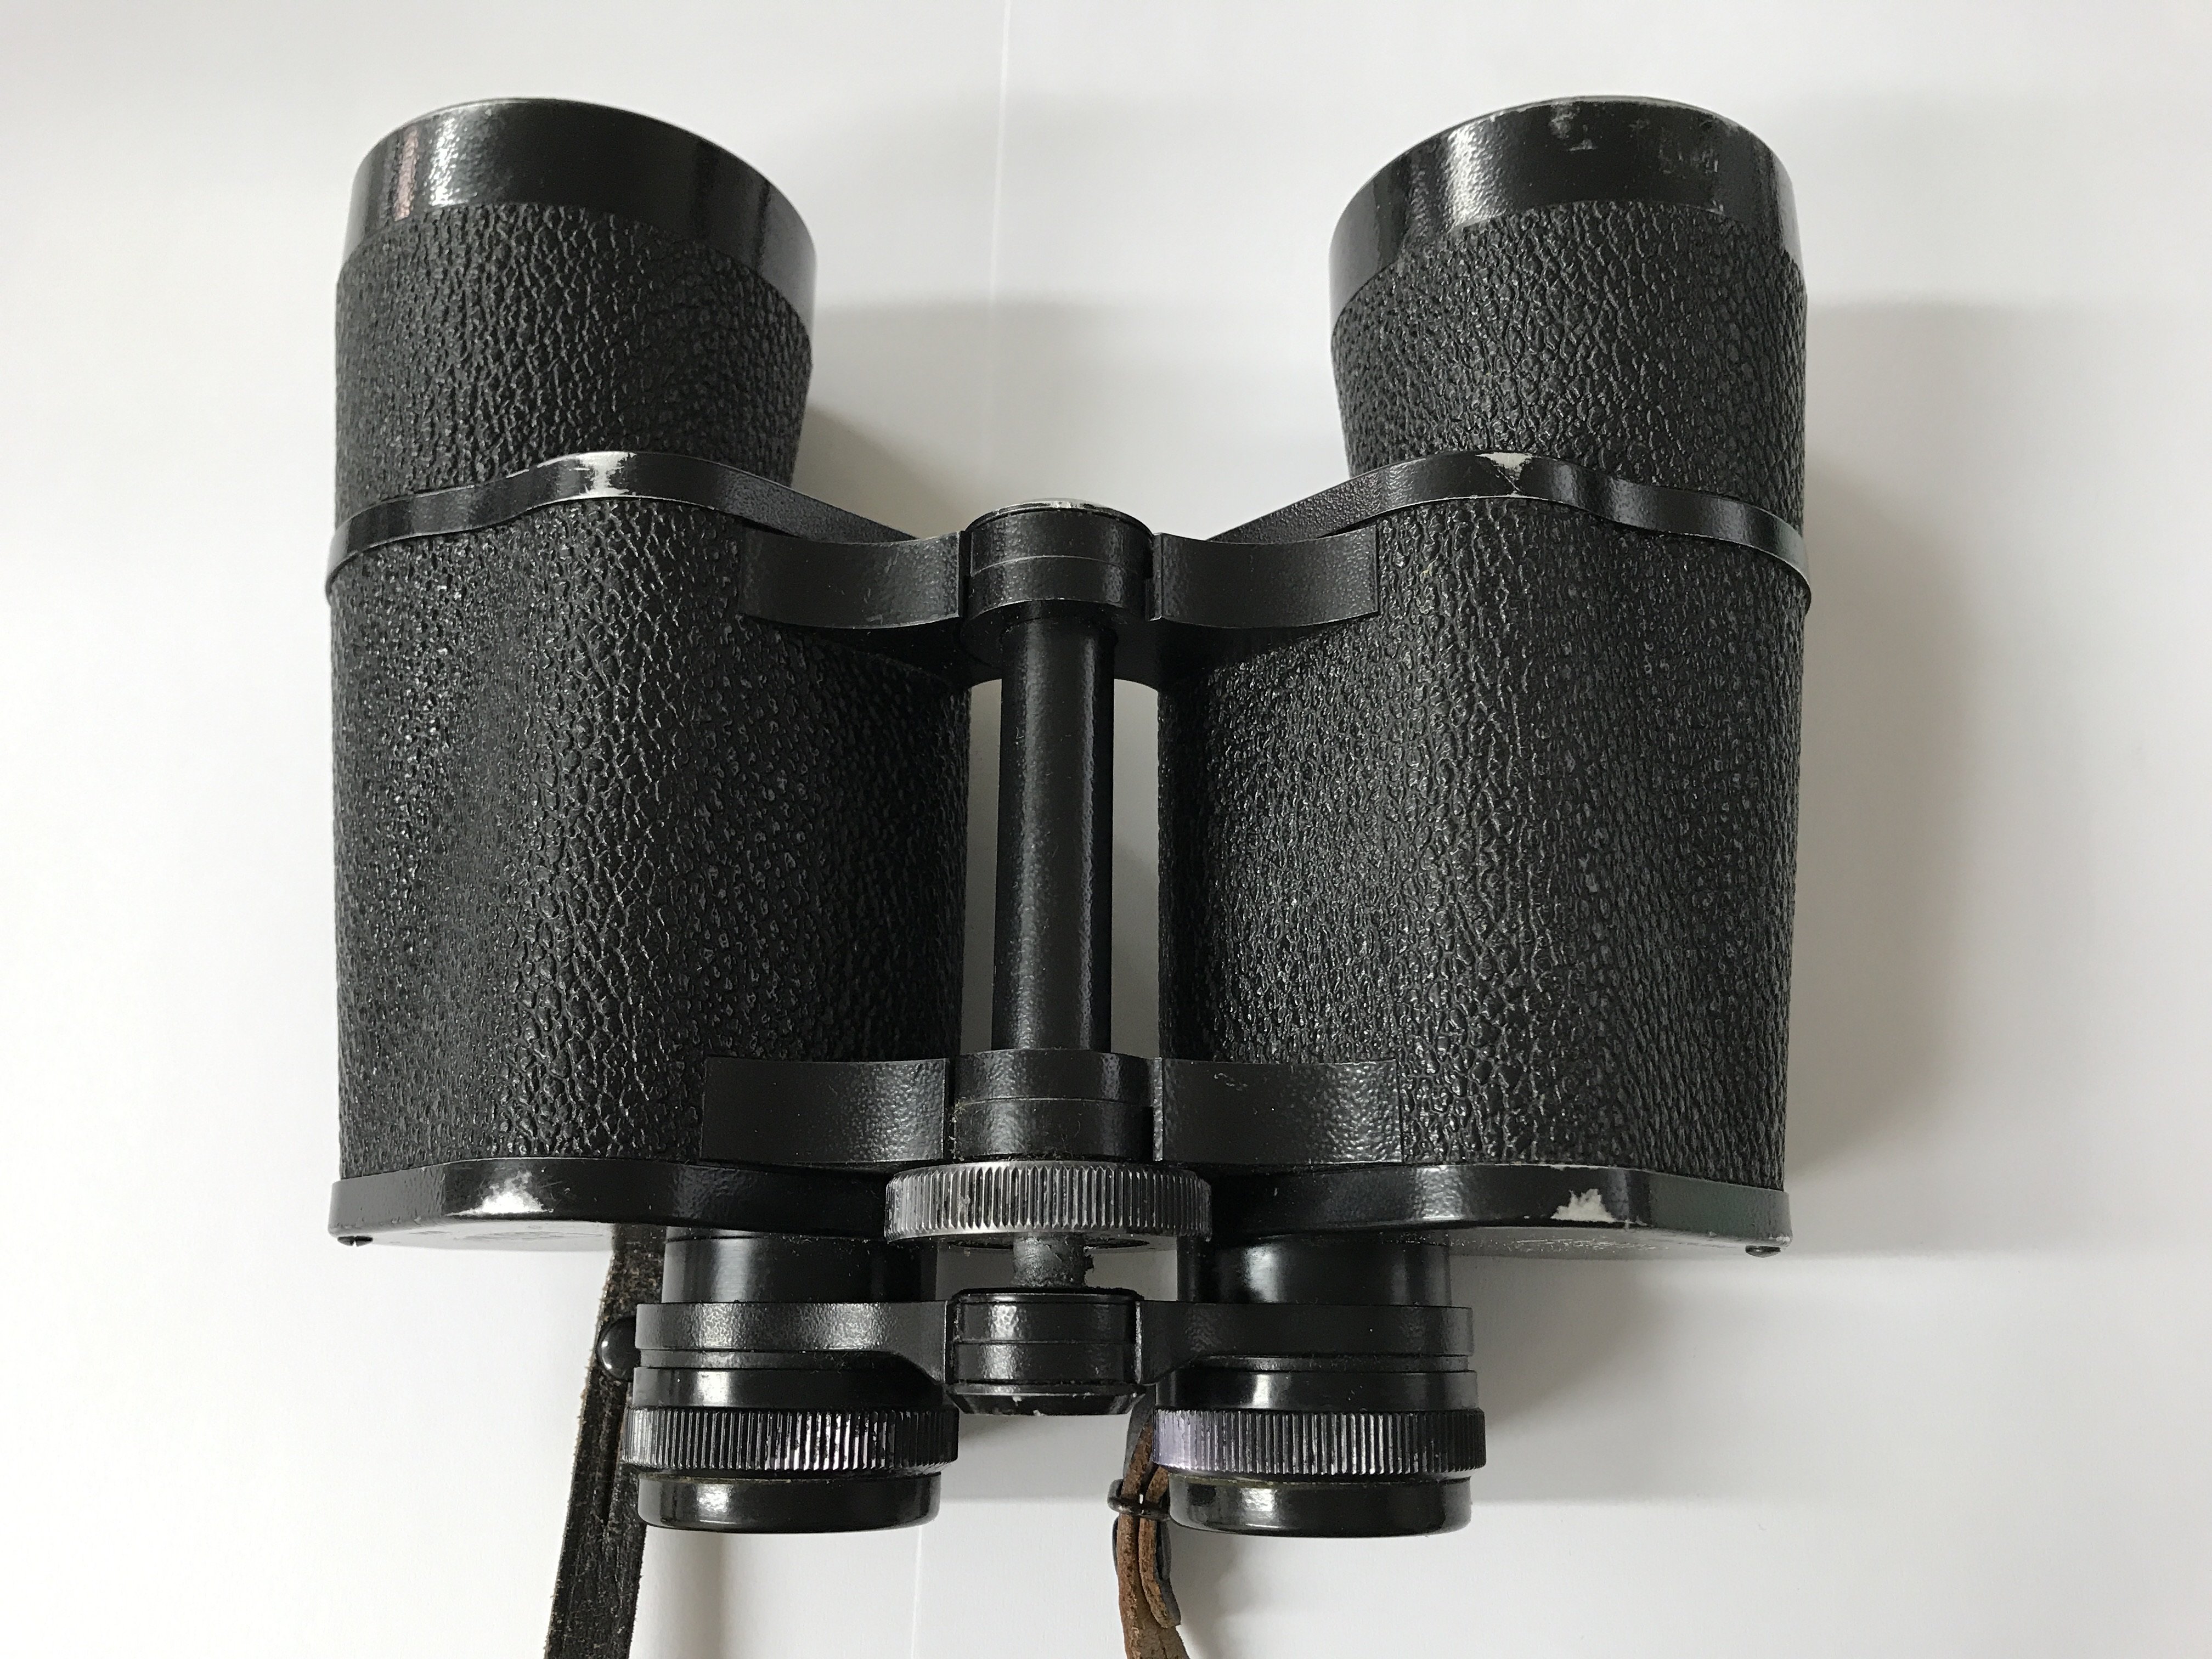 Carl Zeiss Jenoptem 10x50W multi coated binoculars